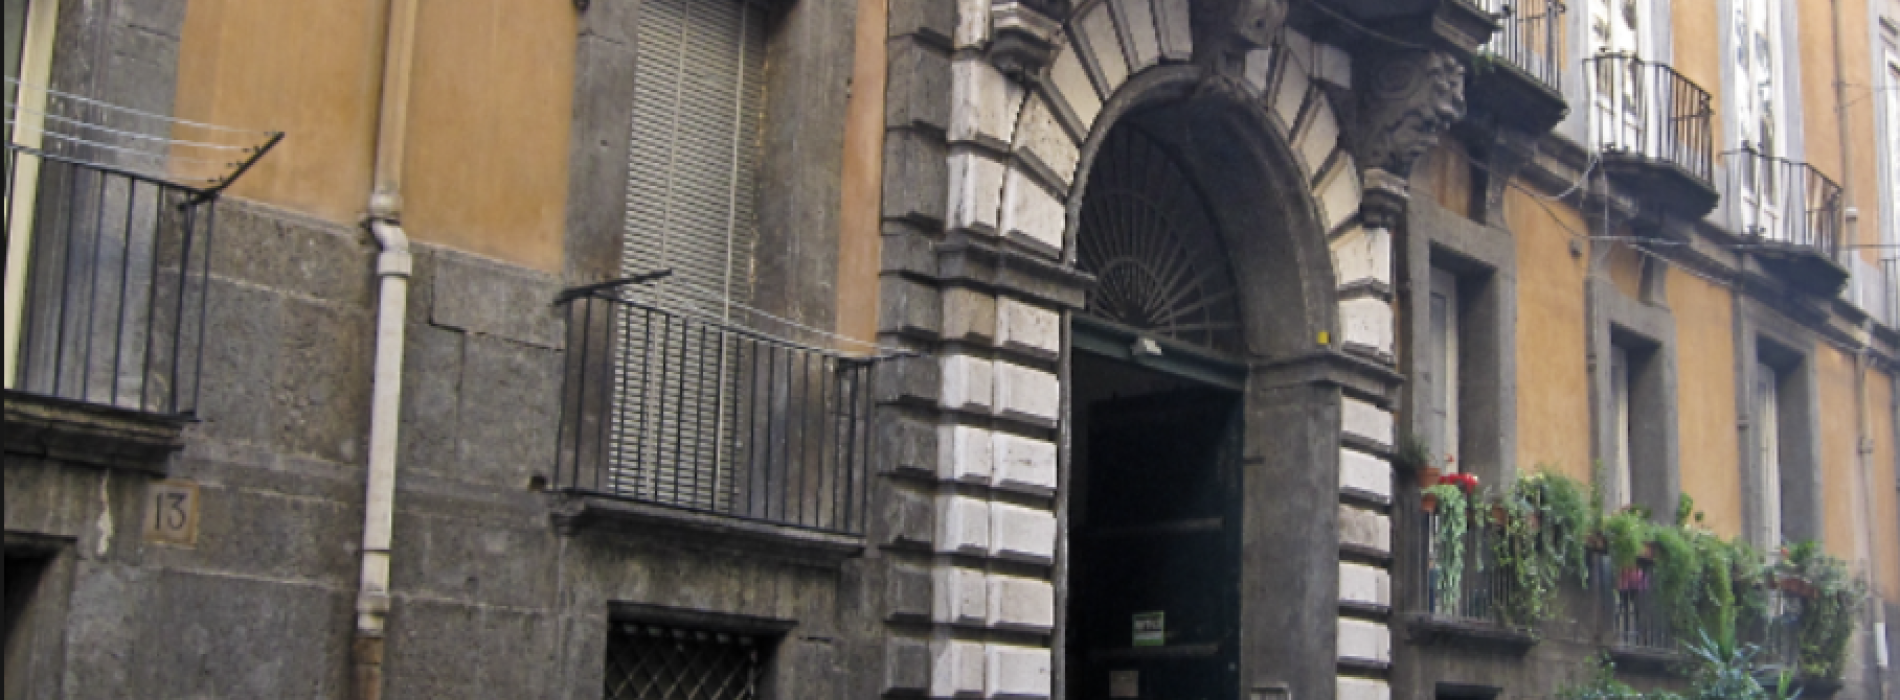 Scena aperta, il progetto va a Palazzo Serra di Cassano